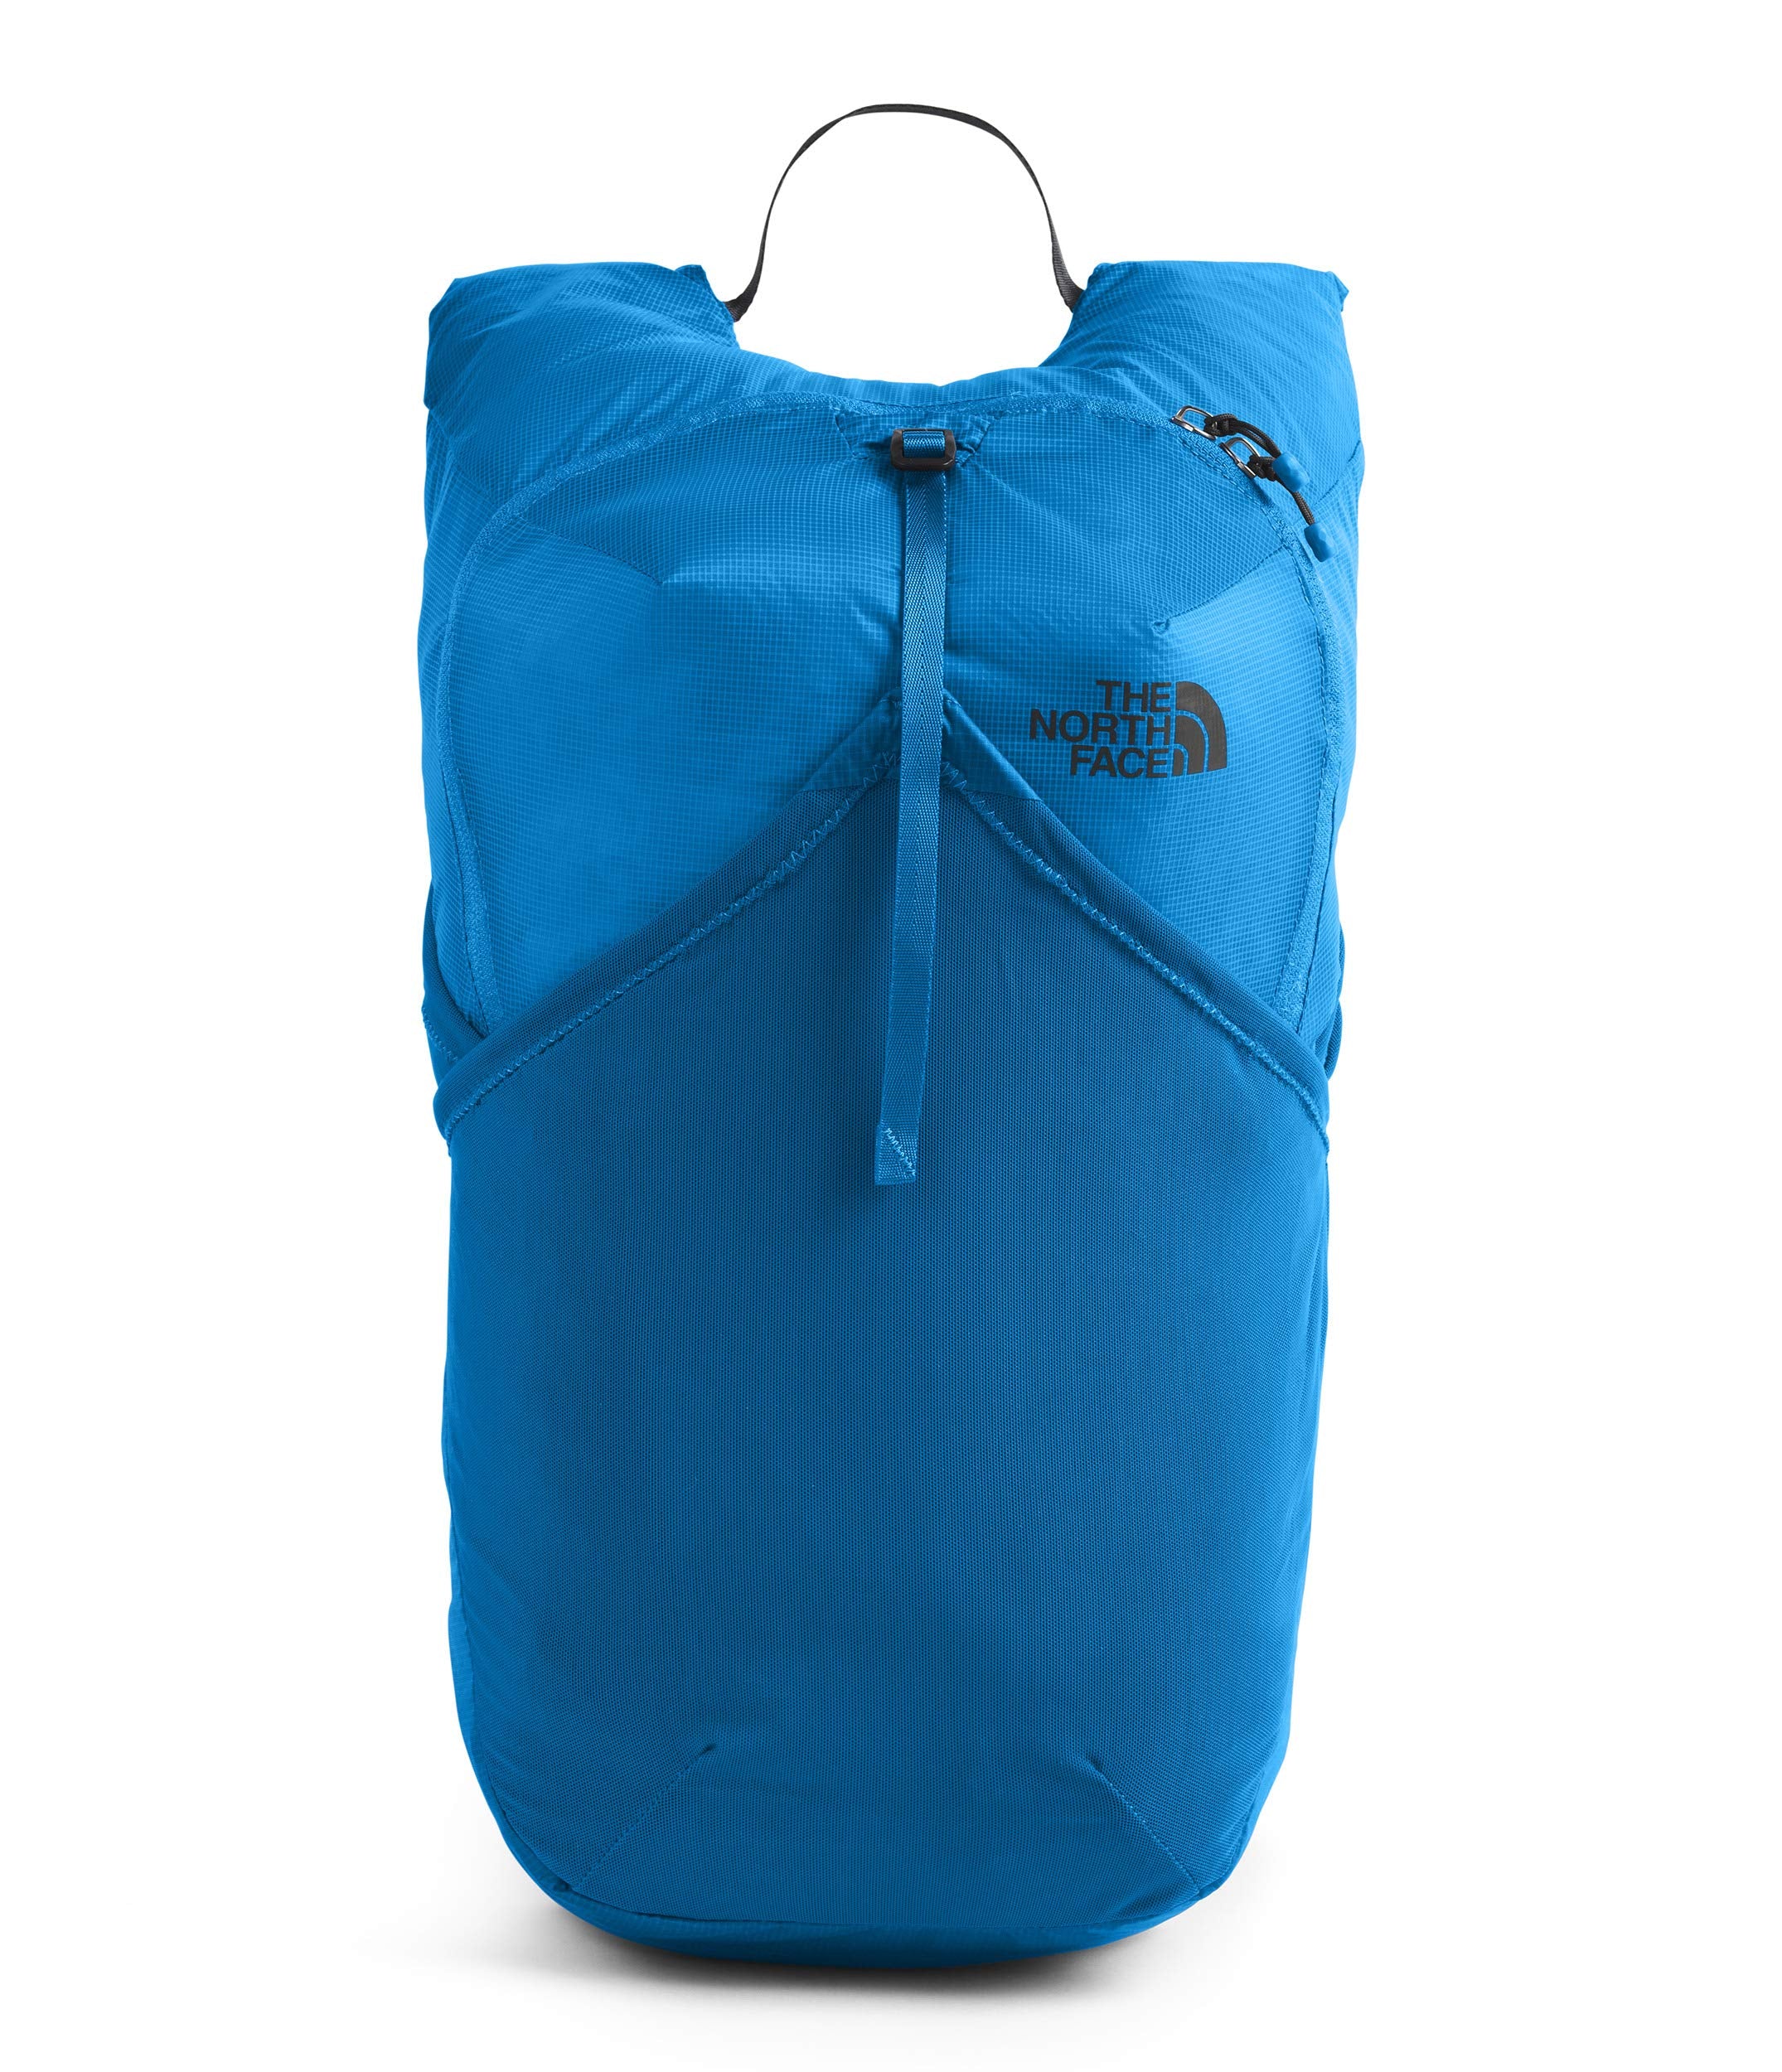 Respectievelijk Weggelaten Smaak The North Face Flyweight Pack, Clear Lake Blue, One Size– backpacks4less.com